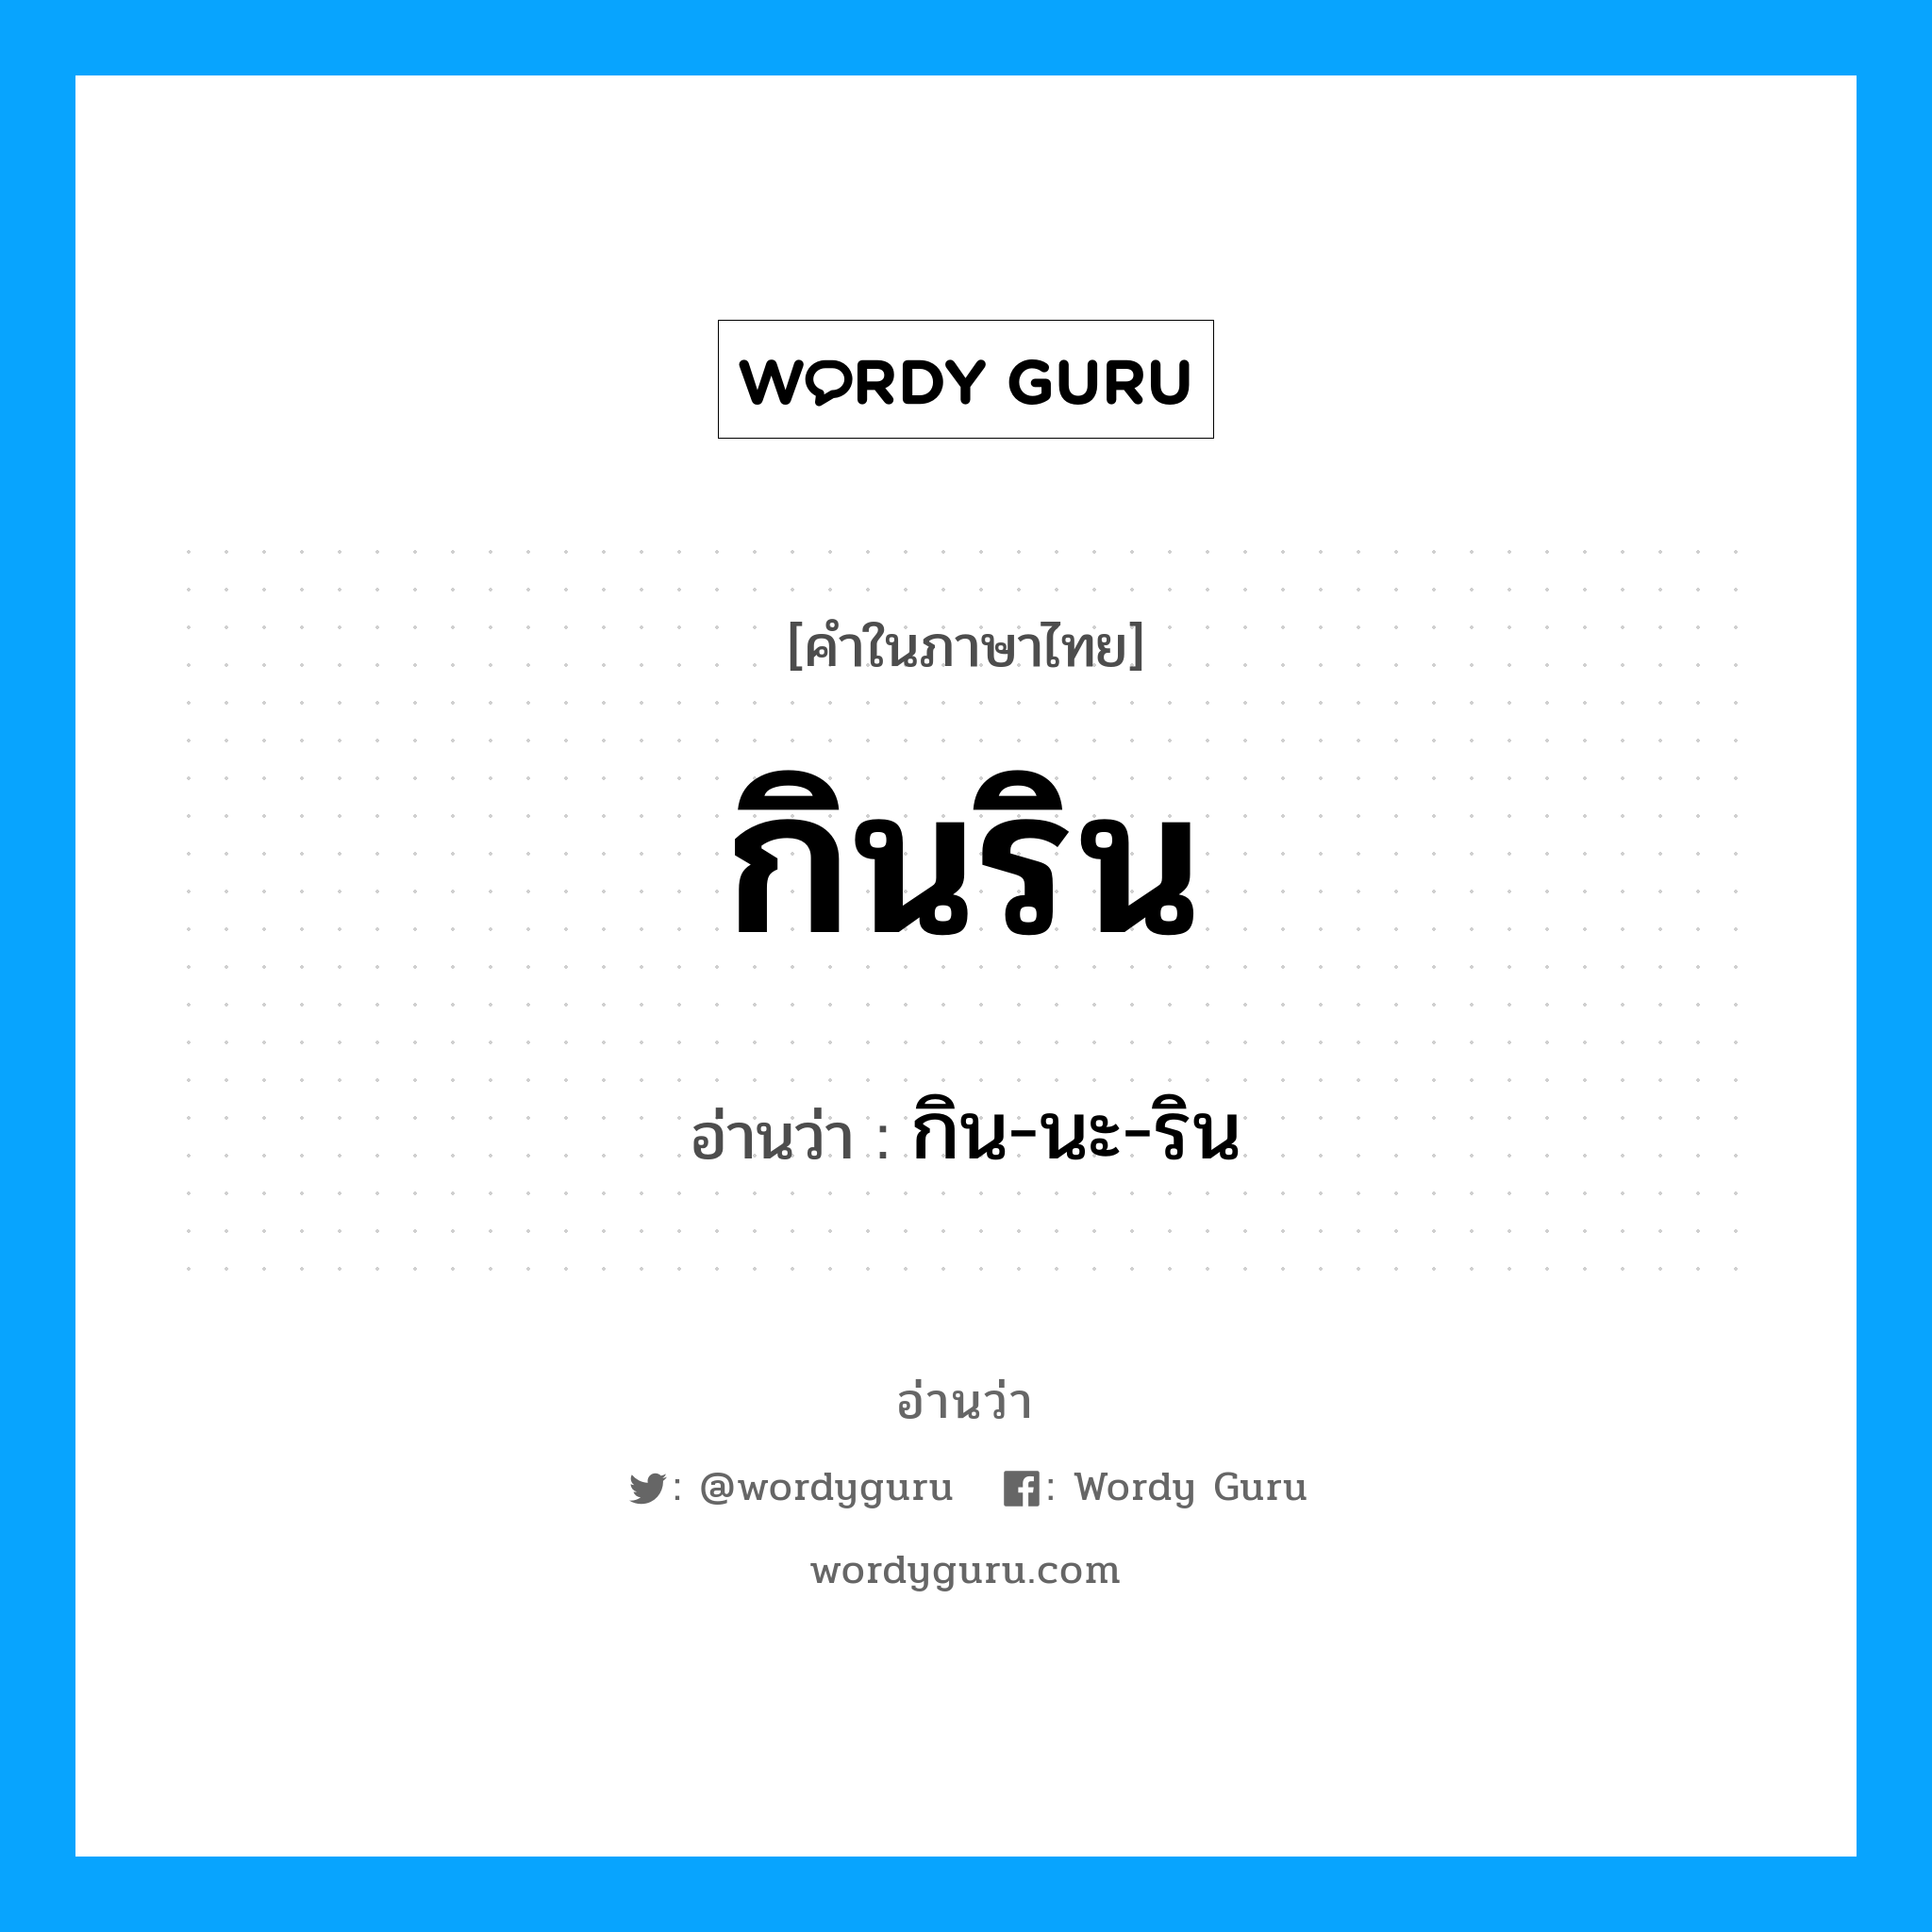 กิน-นะ-ริน เป็นคำอ่านของคำไหน?, คำในภาษาไทย กิน-นะ-ริน อ่านว่า กินริน